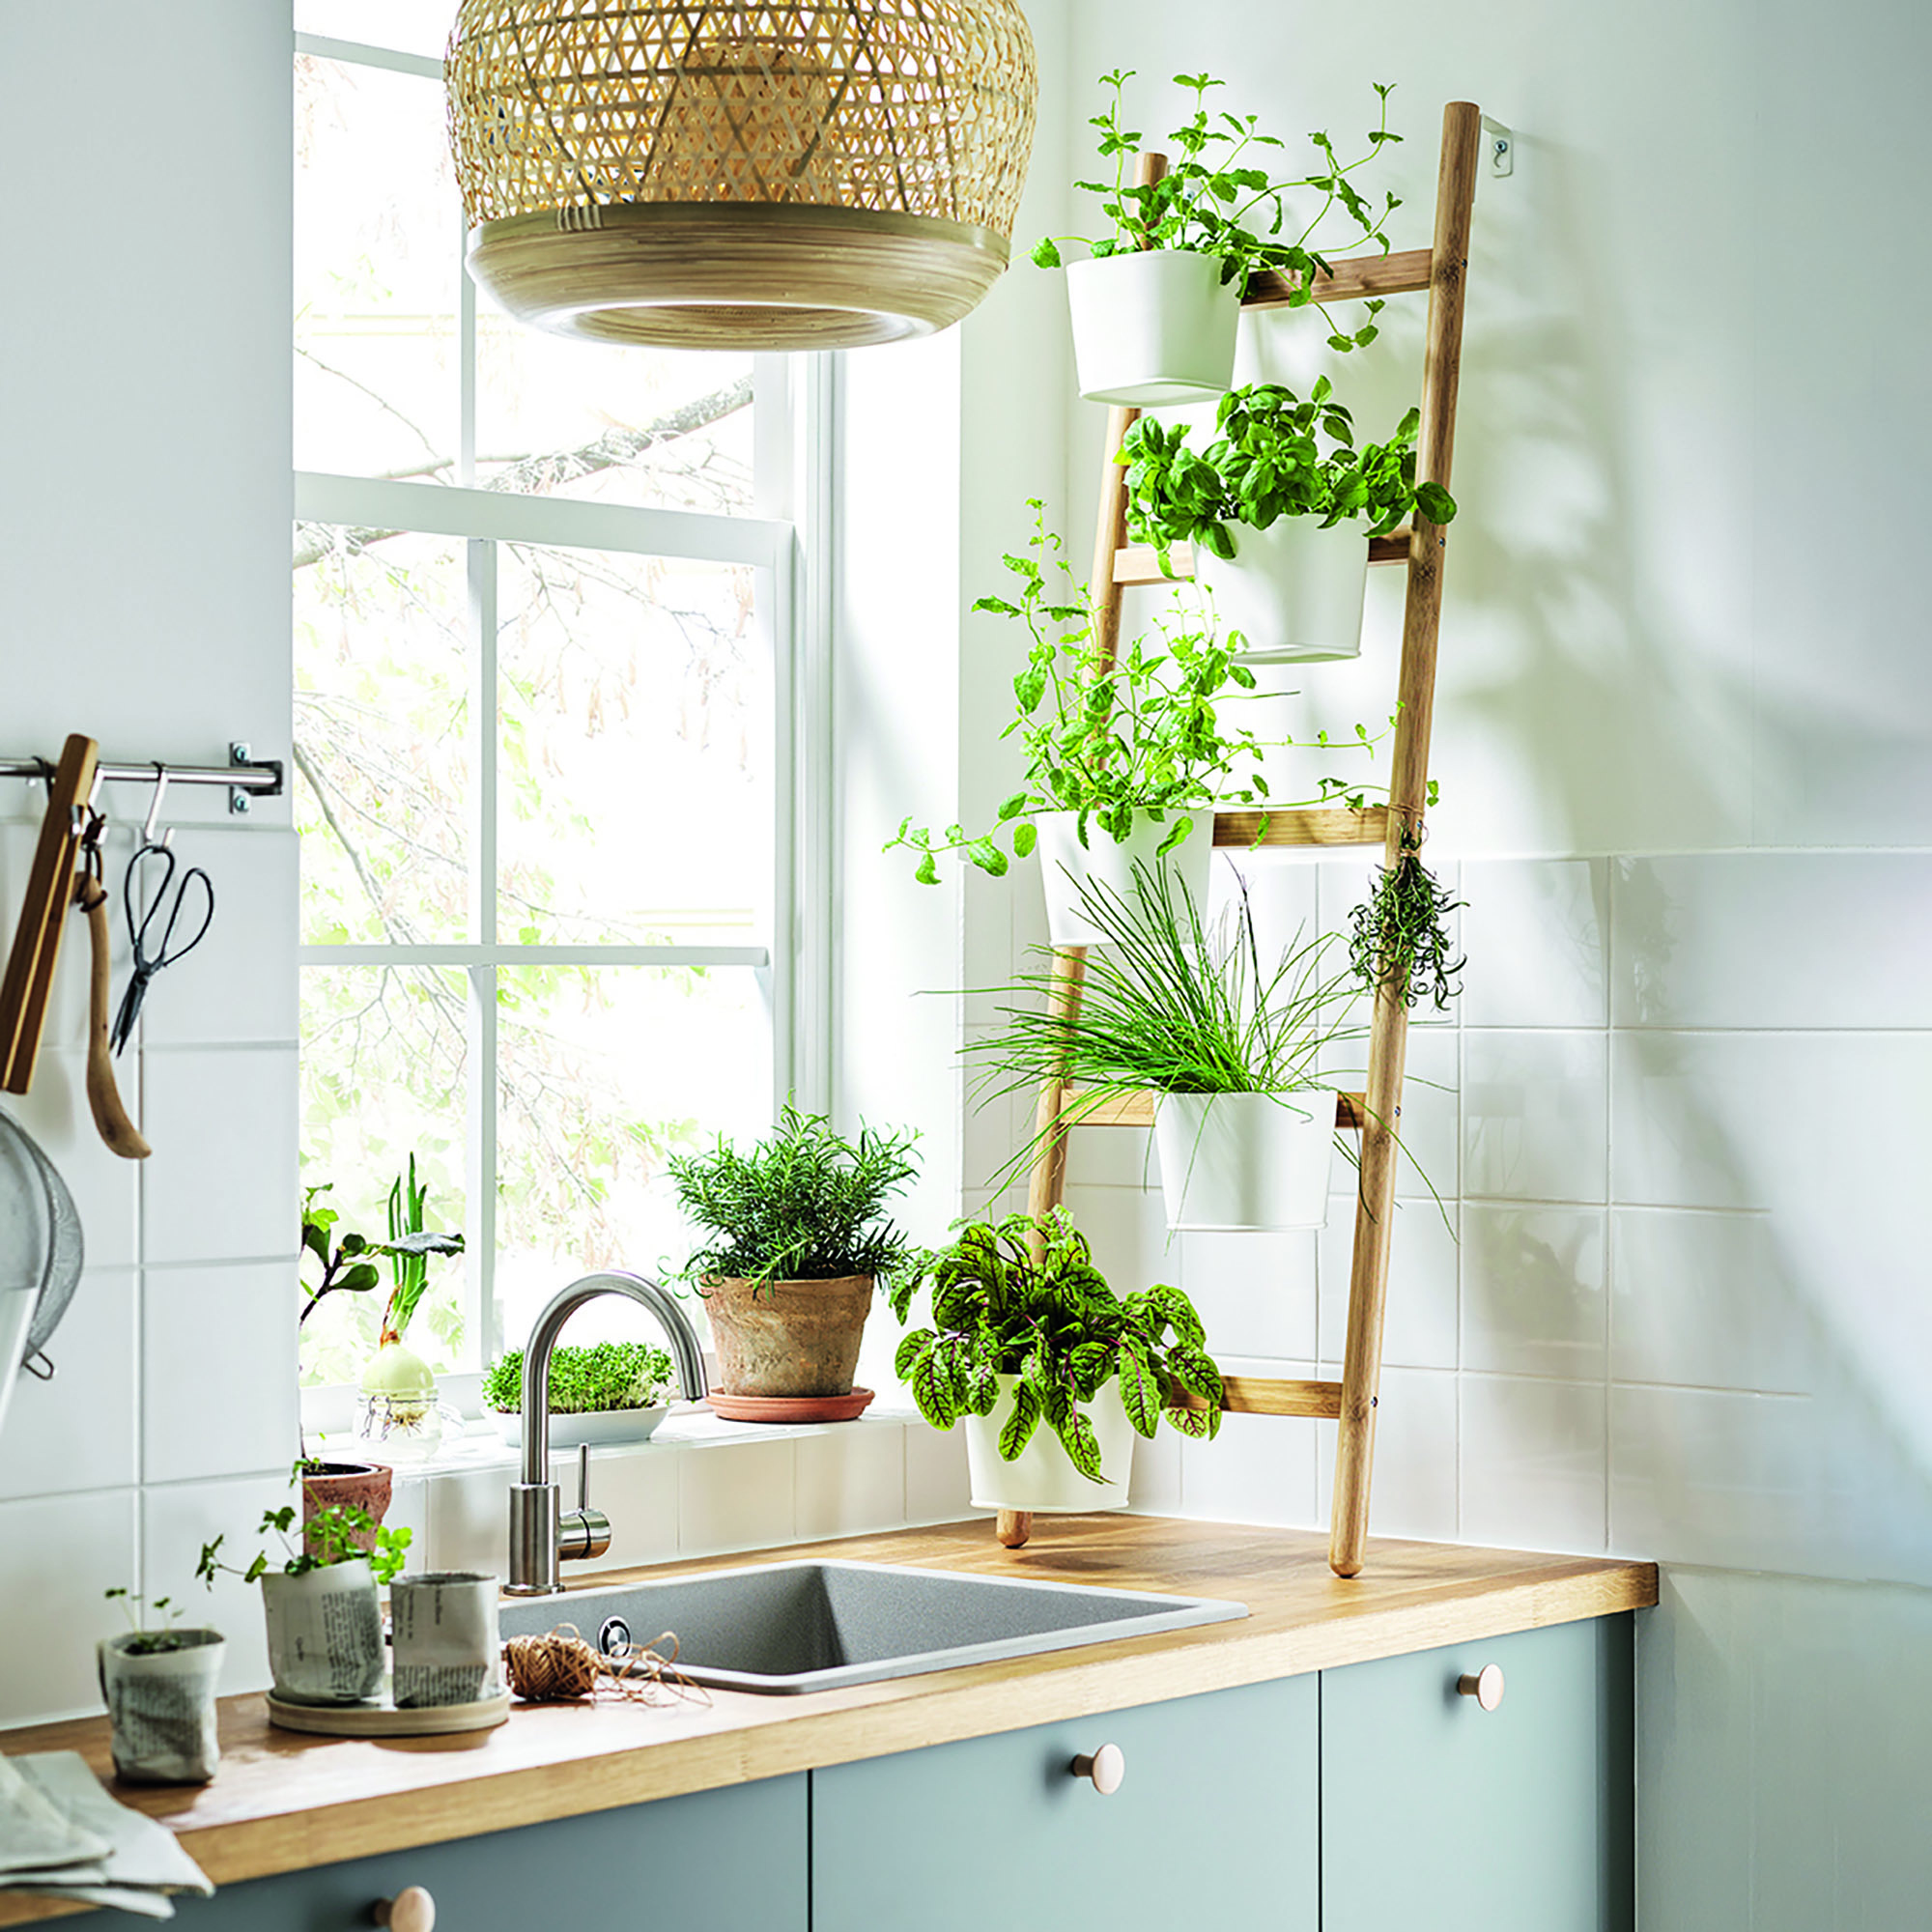 20 Genius Storage Ideas to Maximize Your Small Kitchen